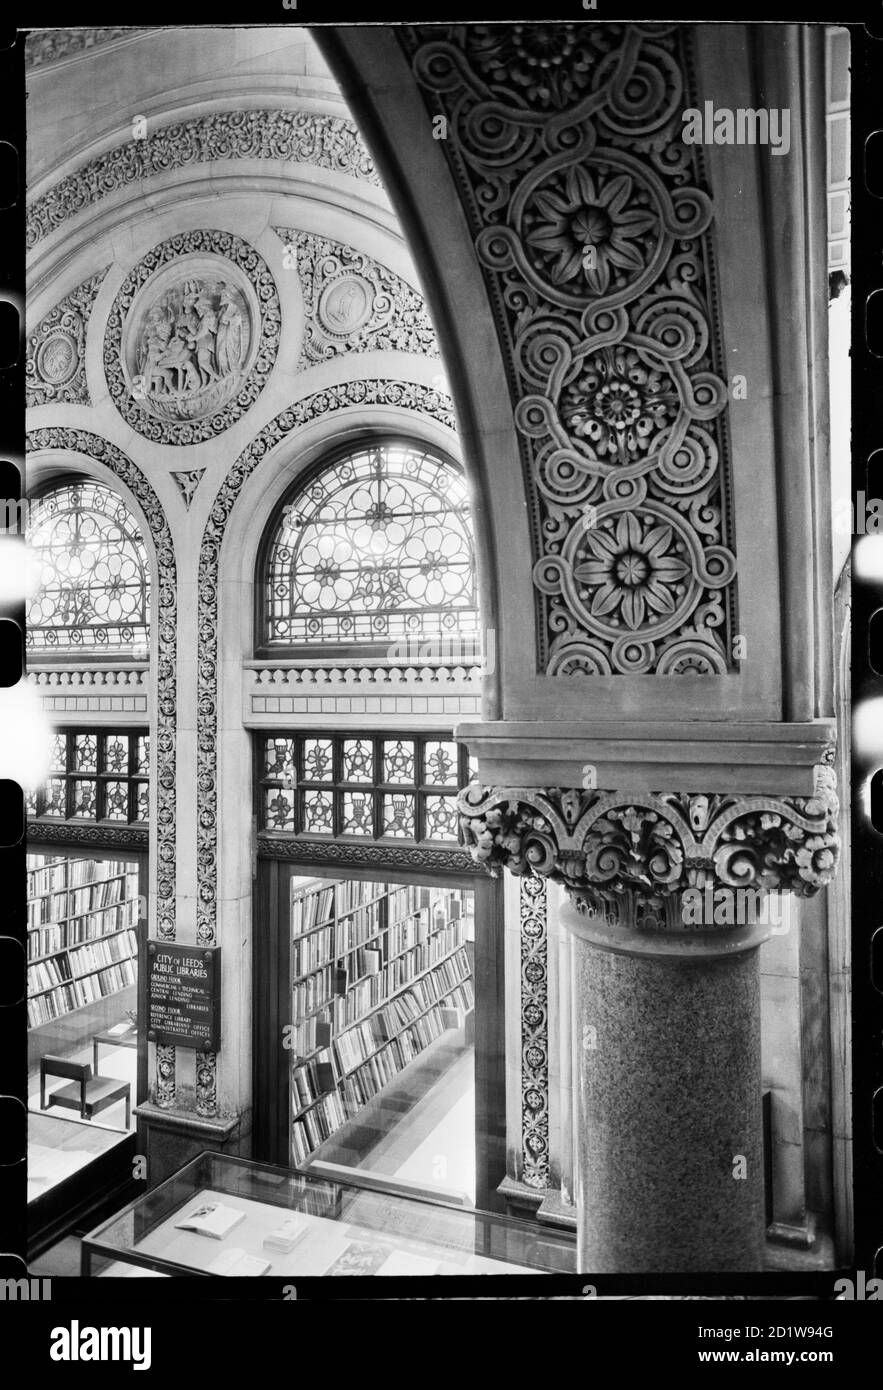 Intérieur d'un bâtiment historique, entrée à double arc d'une salle de bibliothèque au rez-de-chaussée, montrant le dessous d'une arche sculptée Banque D'Images